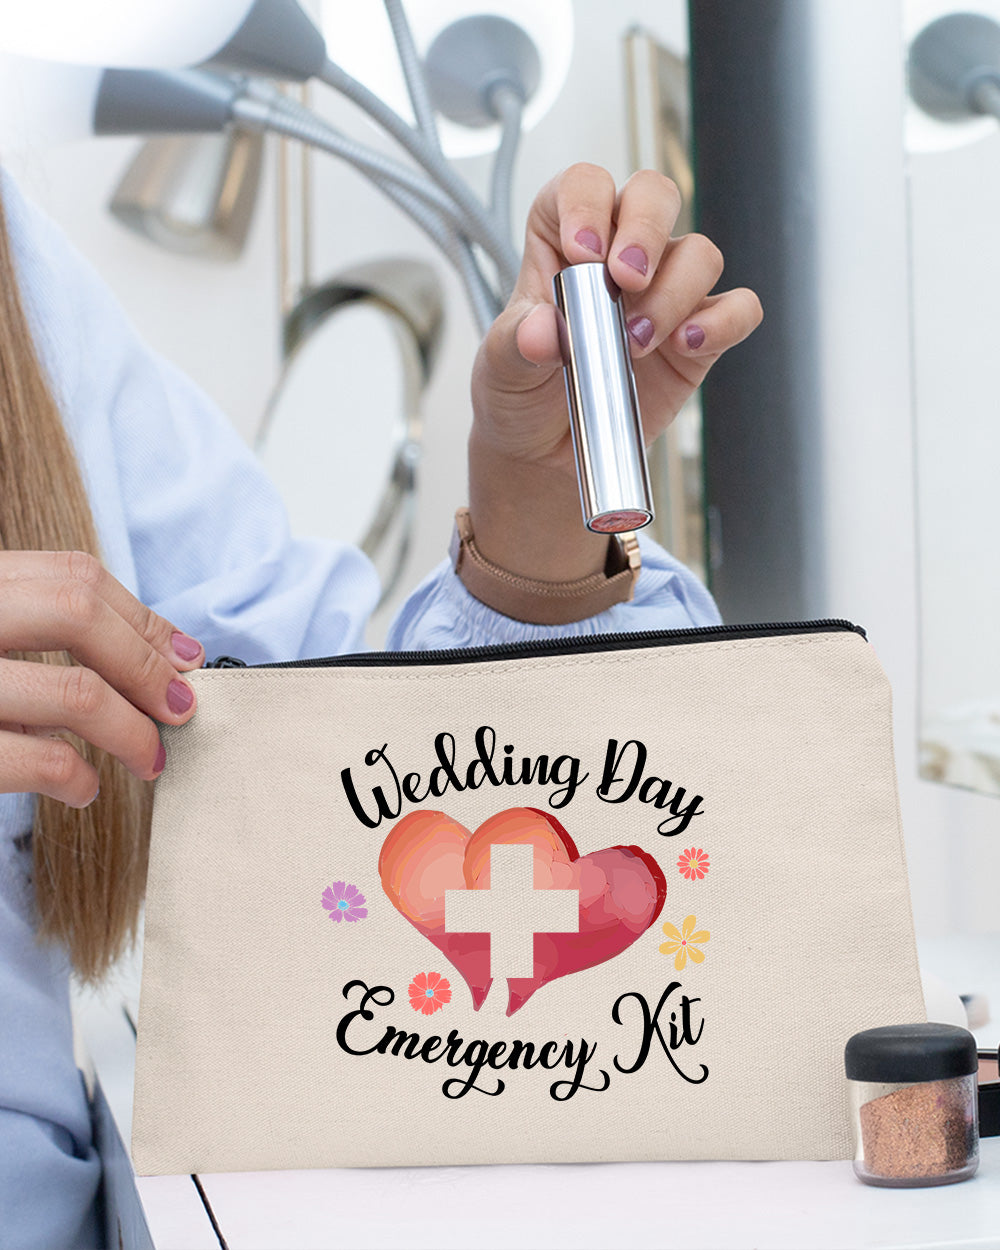 Wedding Day Emergency Kit Makeup Bag for Bride